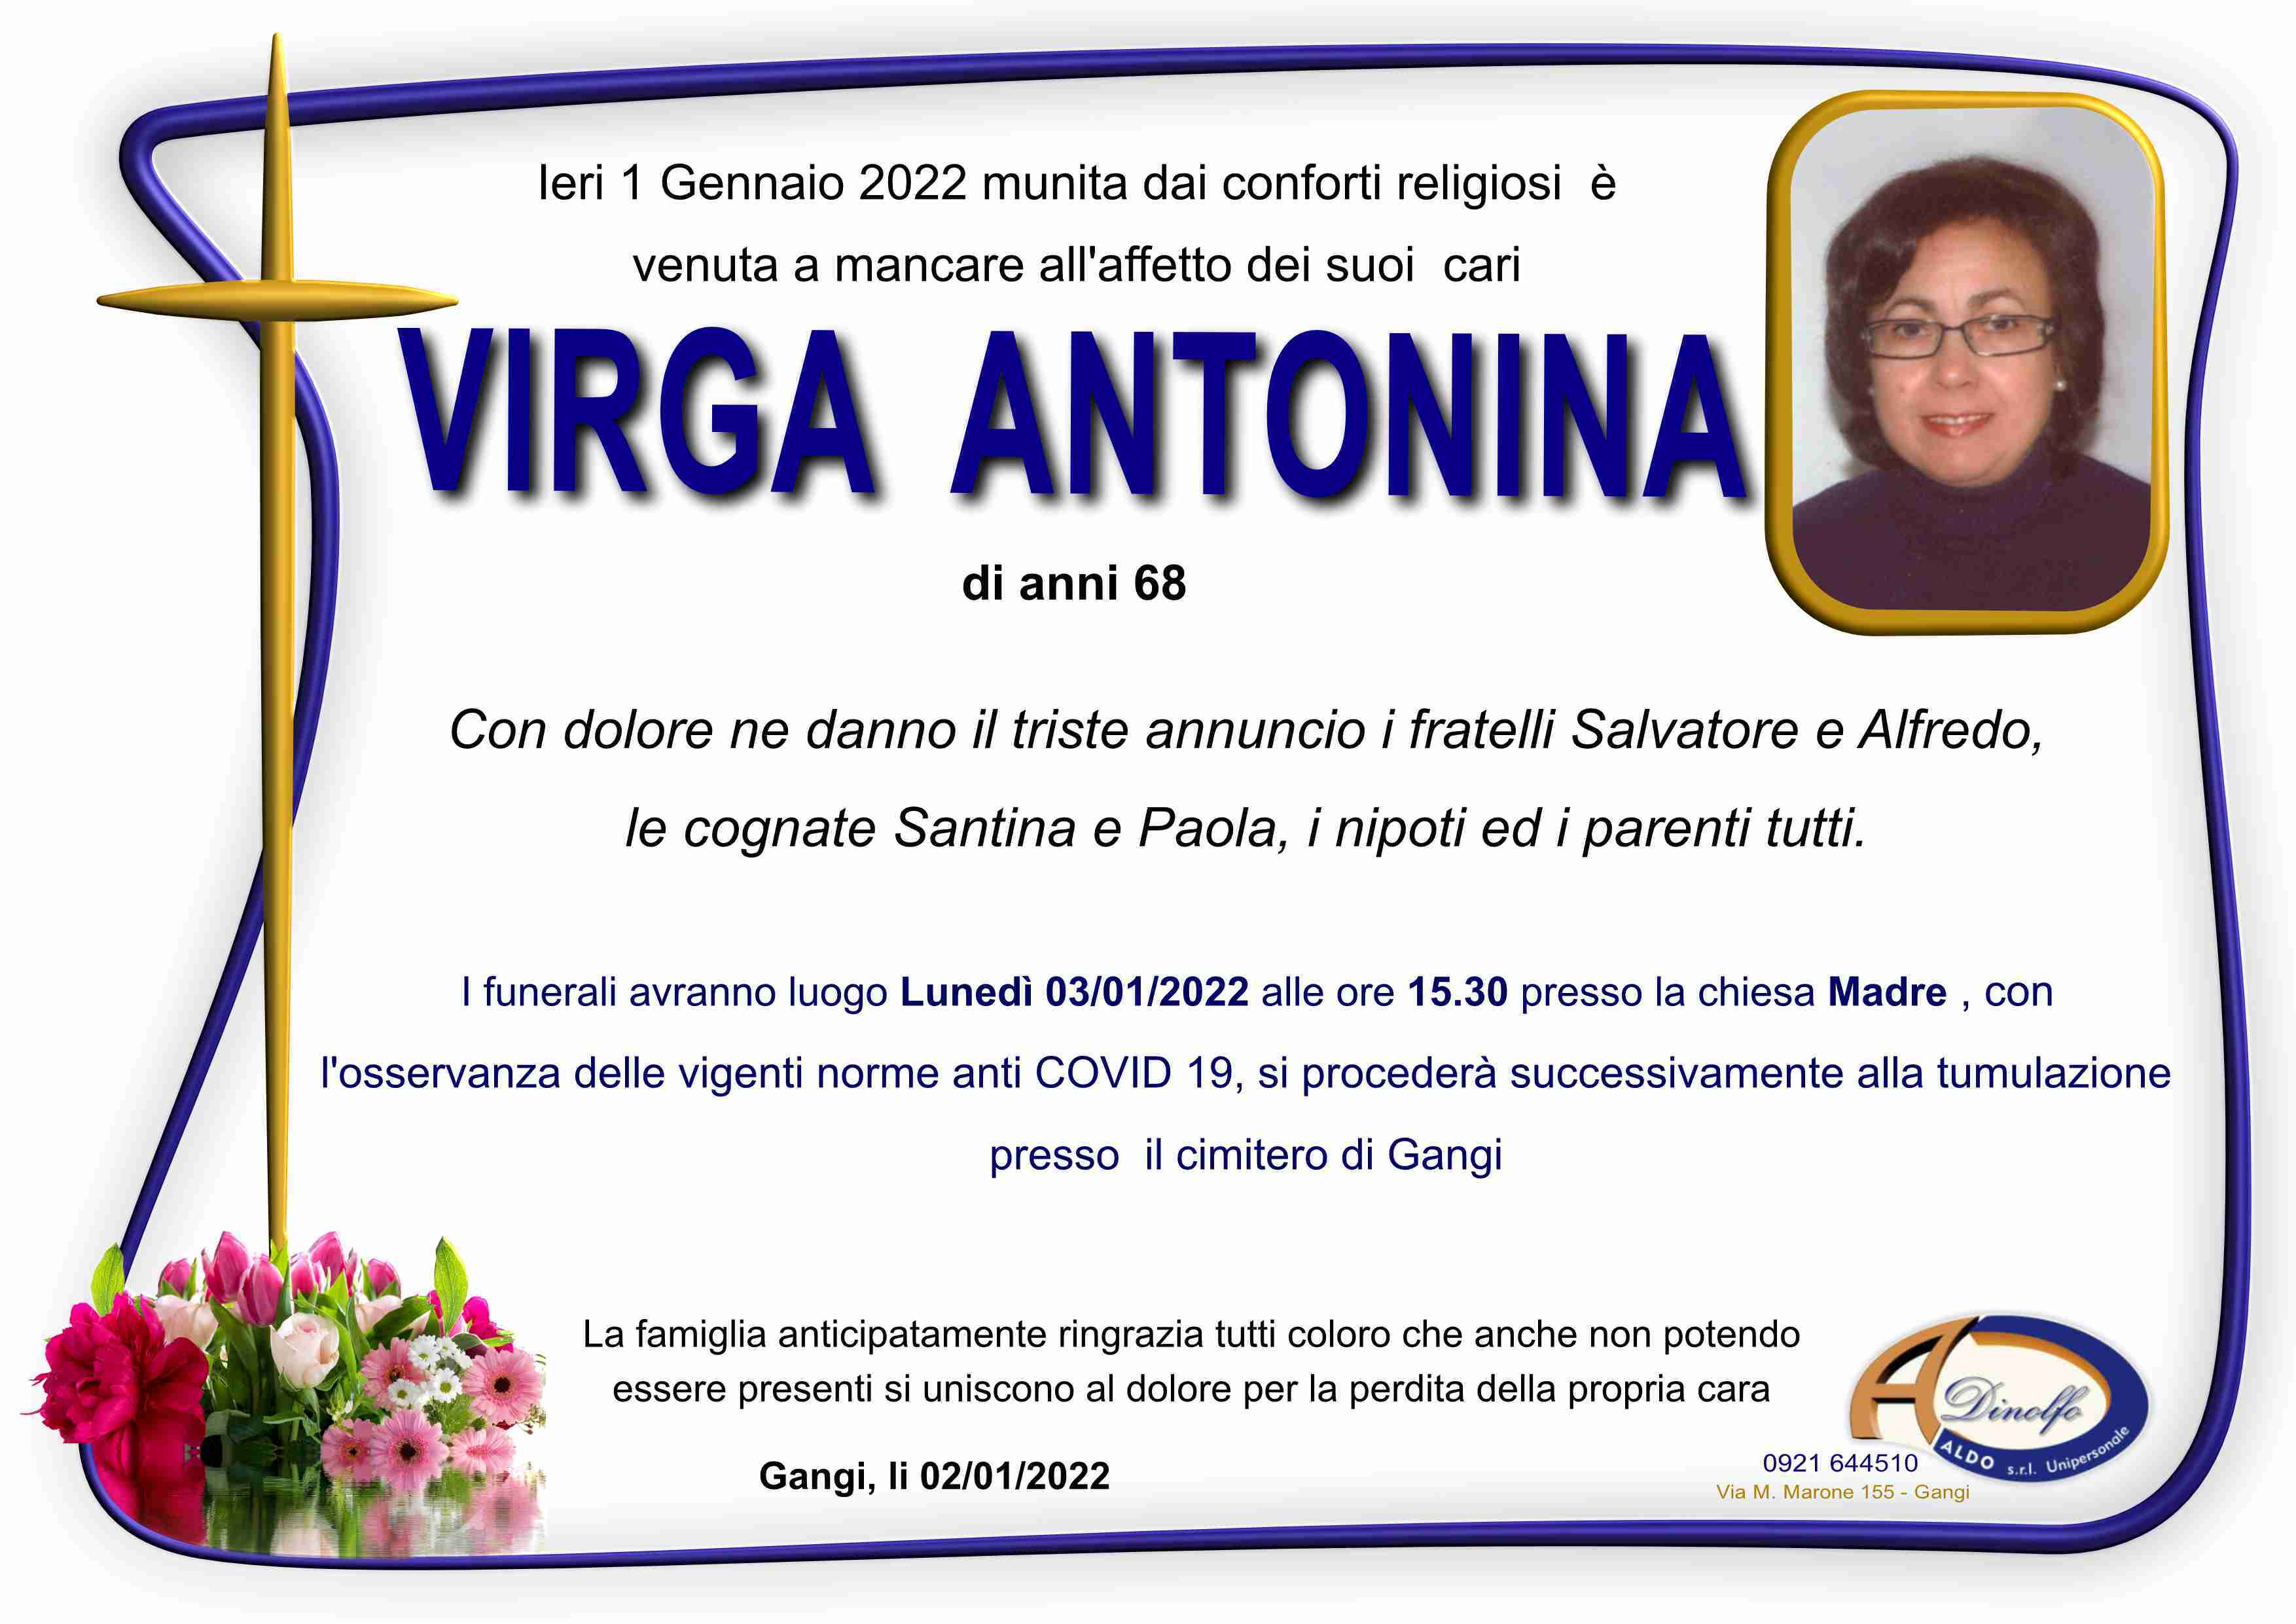 Antonina Virga